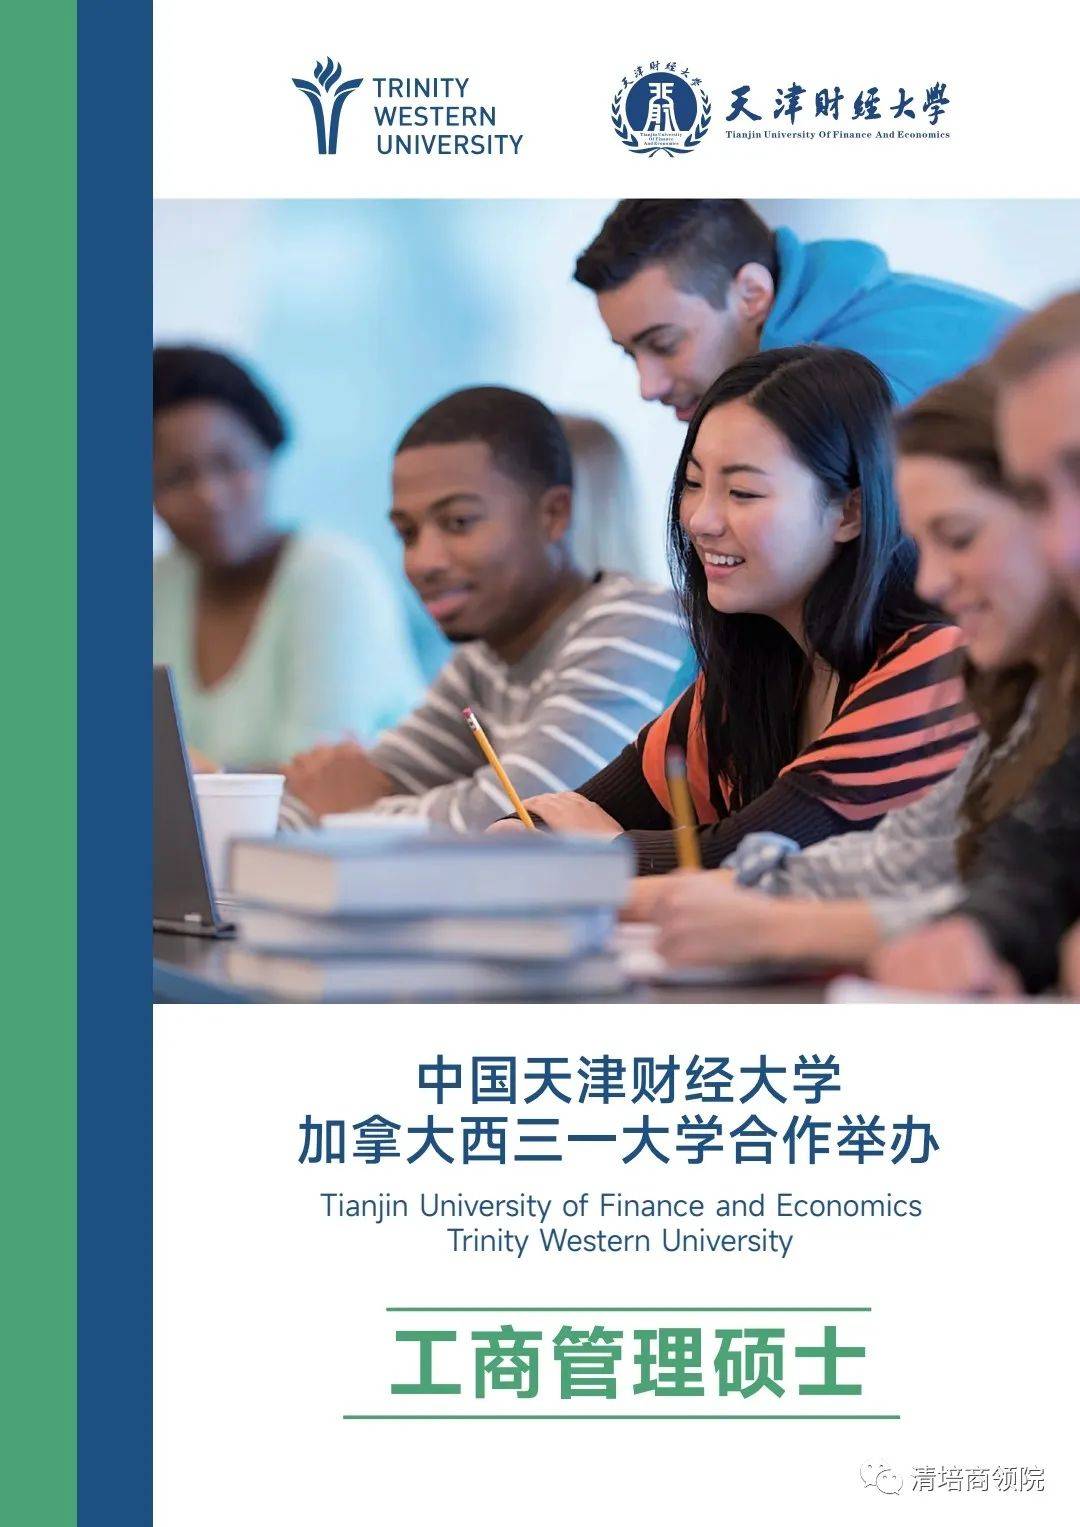 中国天津22选5
大学加拿大西三一大学合作举办工商管理硕士培养目标